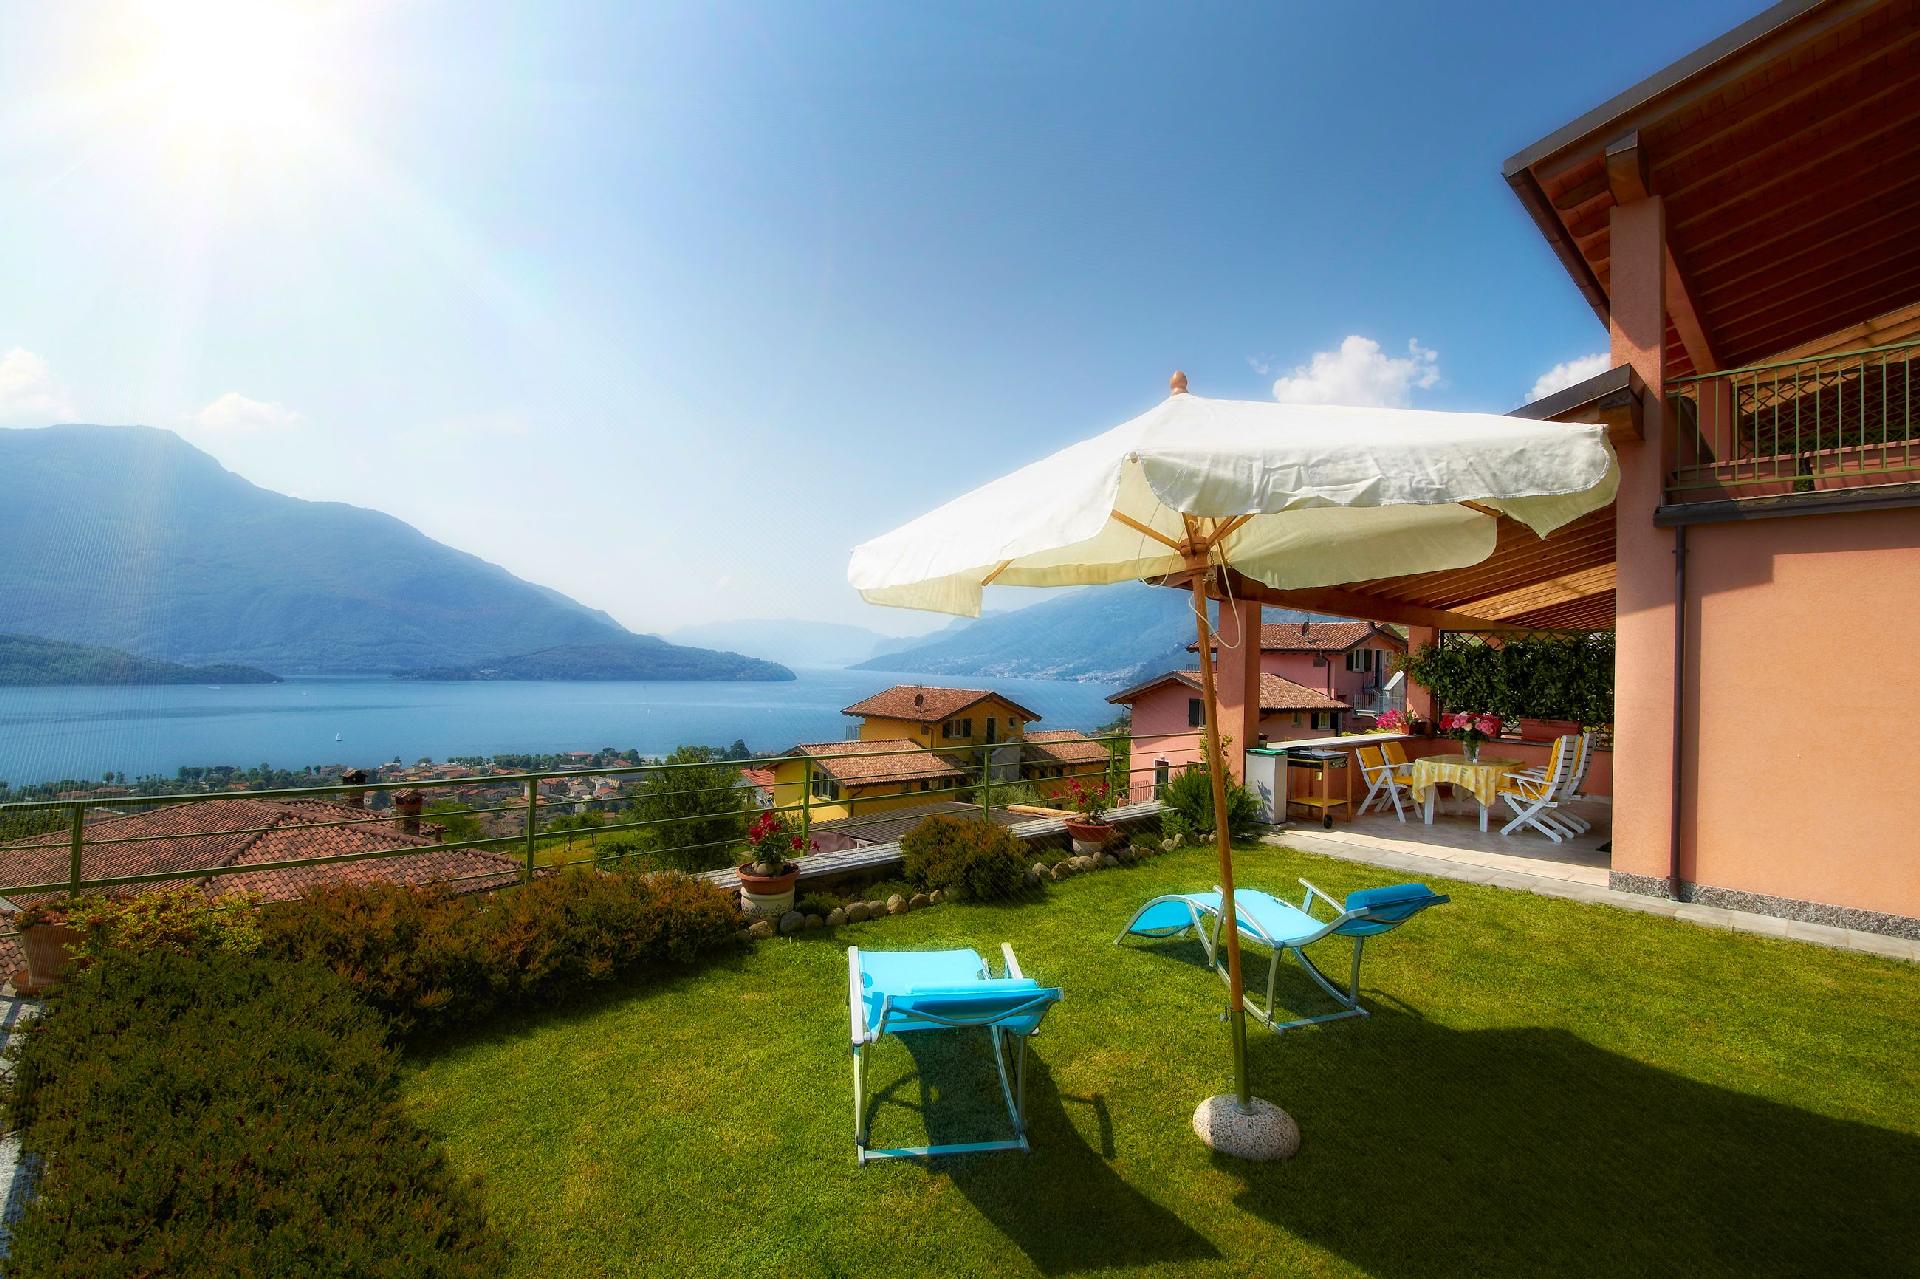 Ferienwohnung für 4 Personen ca. 80 m² i Ferienwohnung in Italien